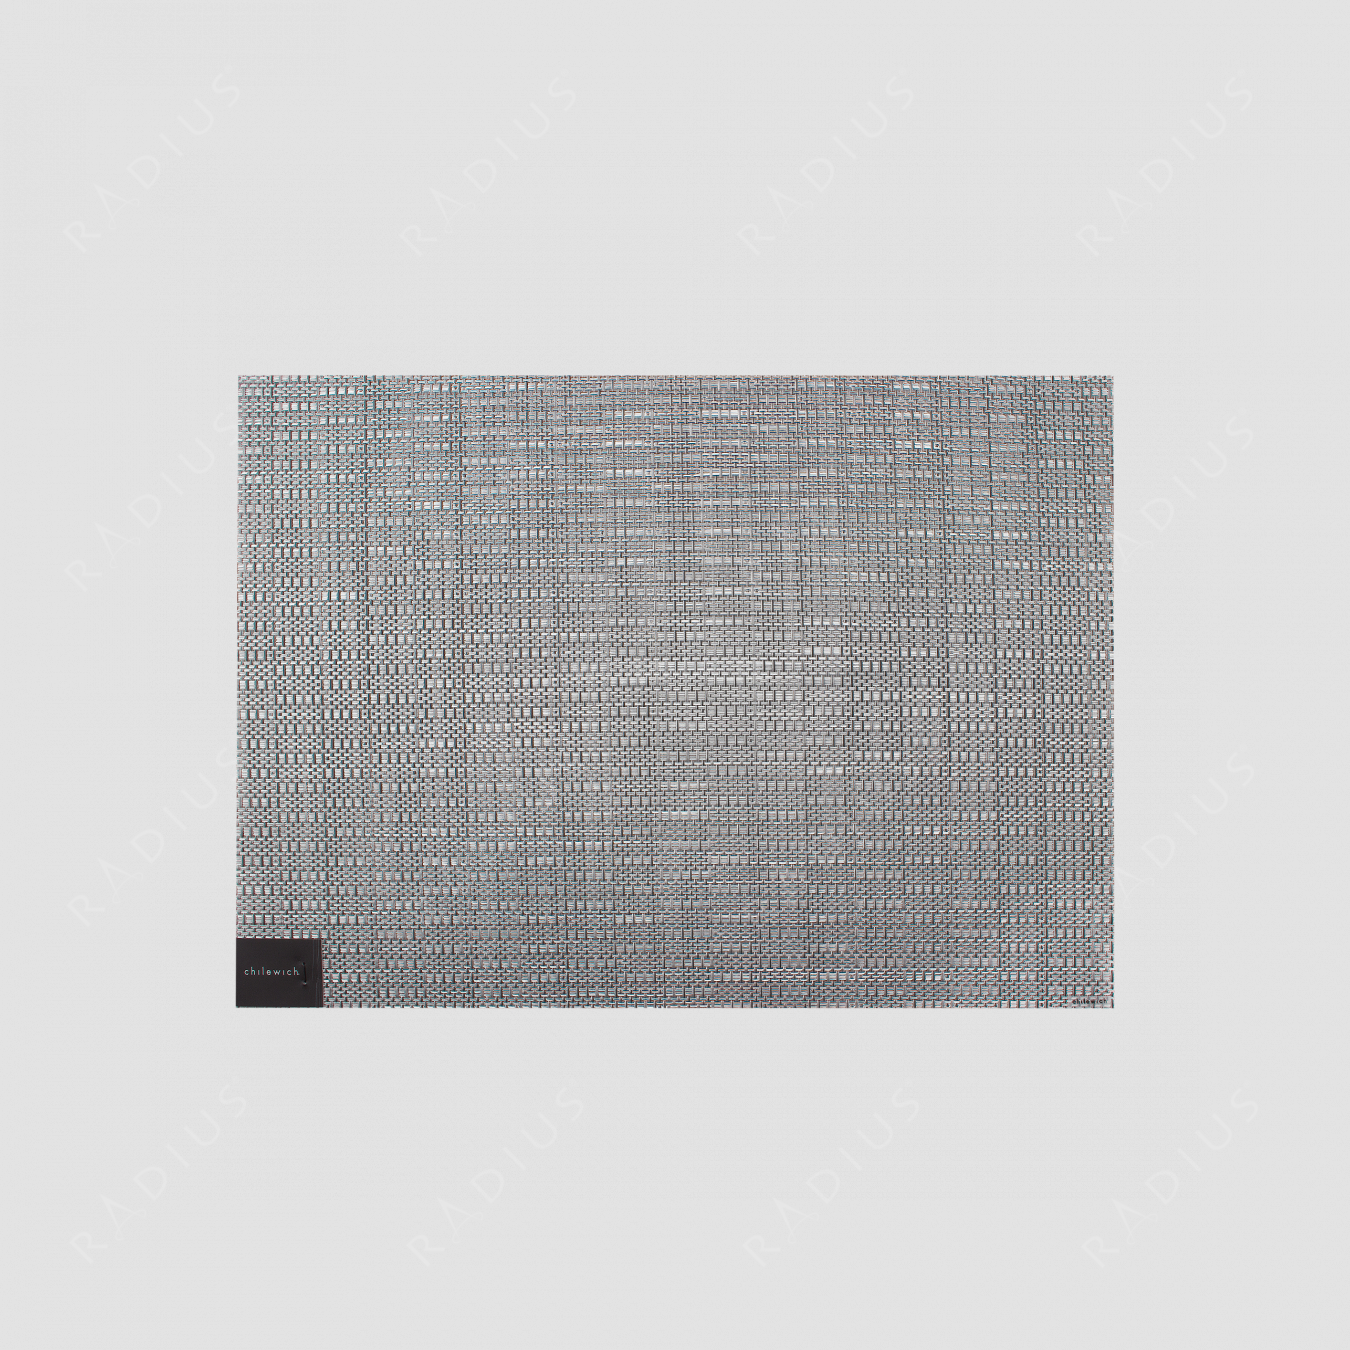 Салфетка подстановочная, жаккардовое плетение, винил, (36х48), Dove, серия Thatch, CHILEWICH, США